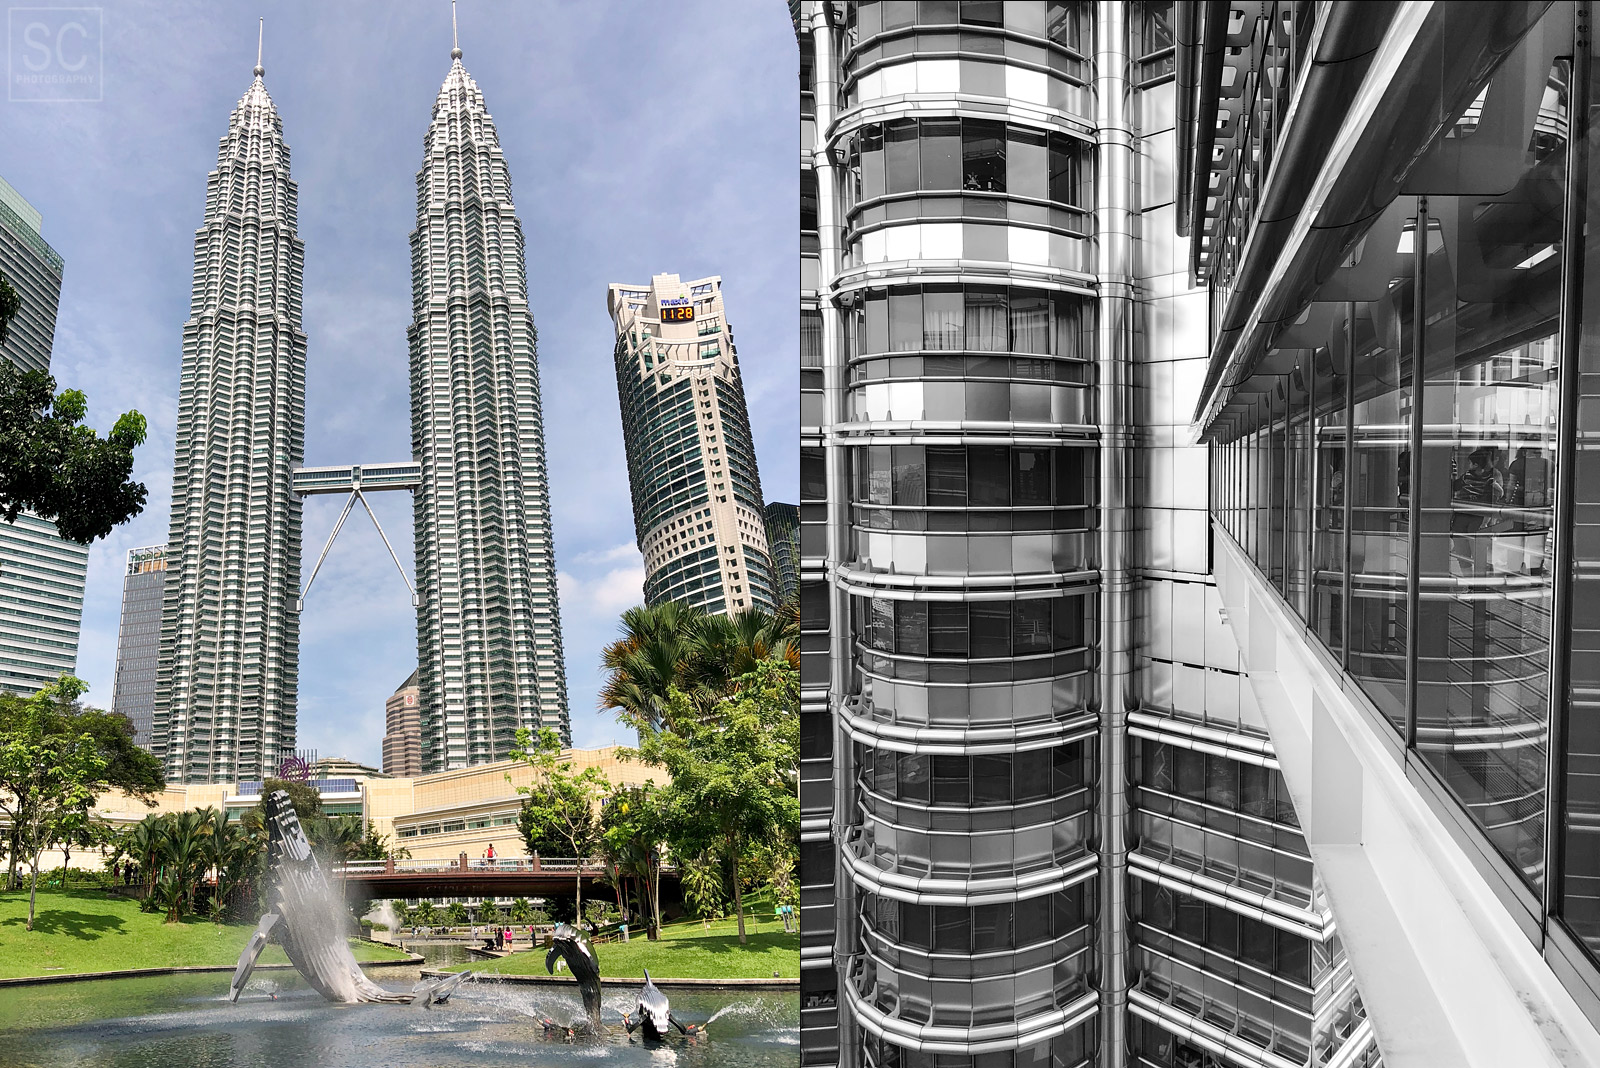 Petronas Towers are pretty impressive in person